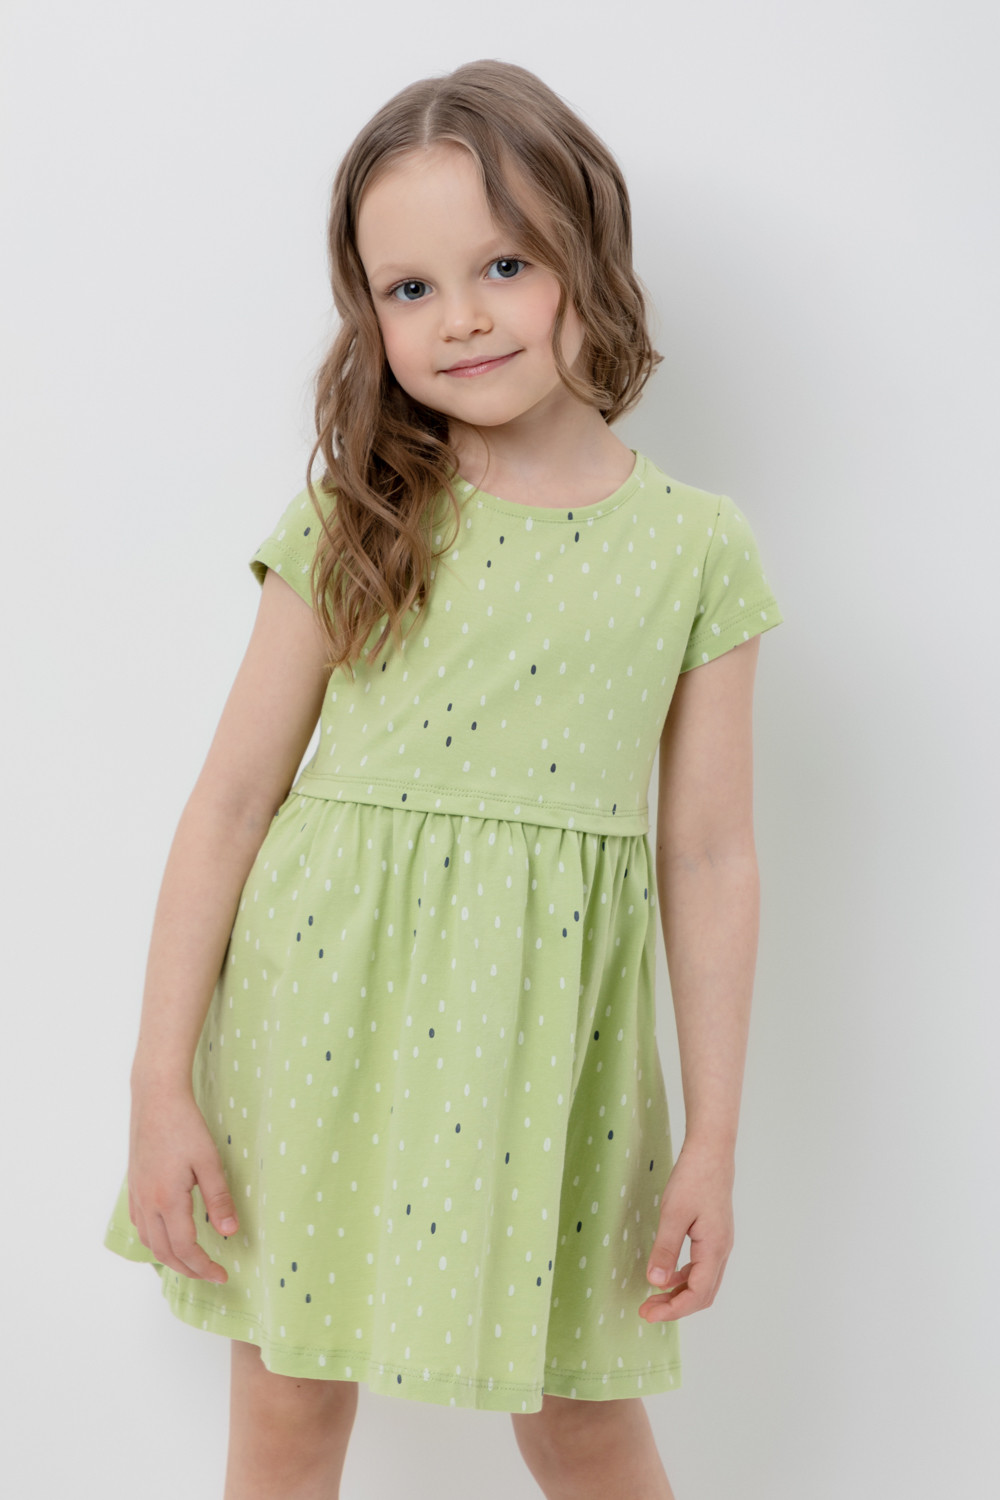 Платье детское CROCKID М 3252, сочный лайм, яркий горошек, 116